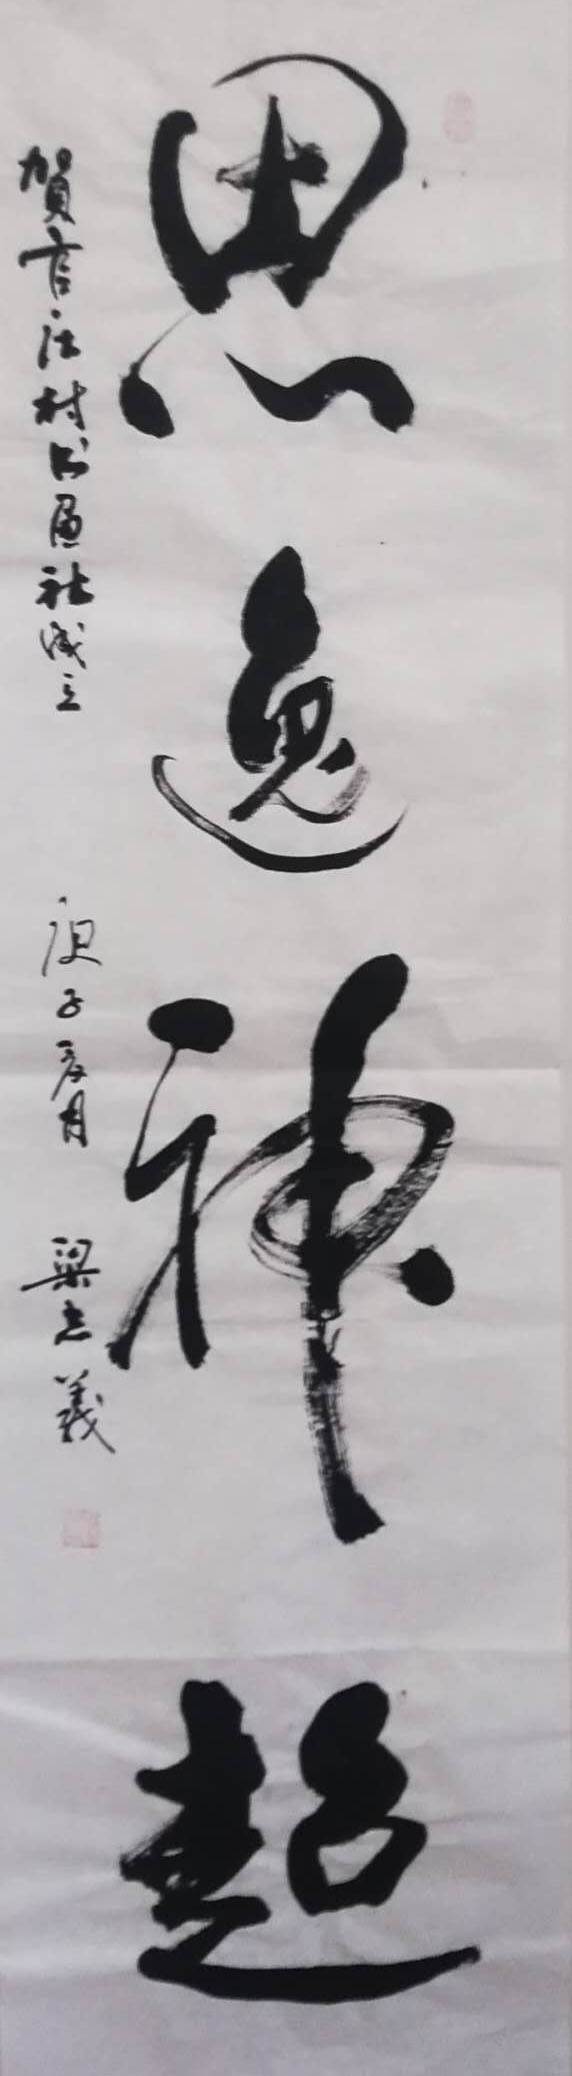 中国楹联学会中宣盛世文化艺术交流中心书画风采展示——梁志义